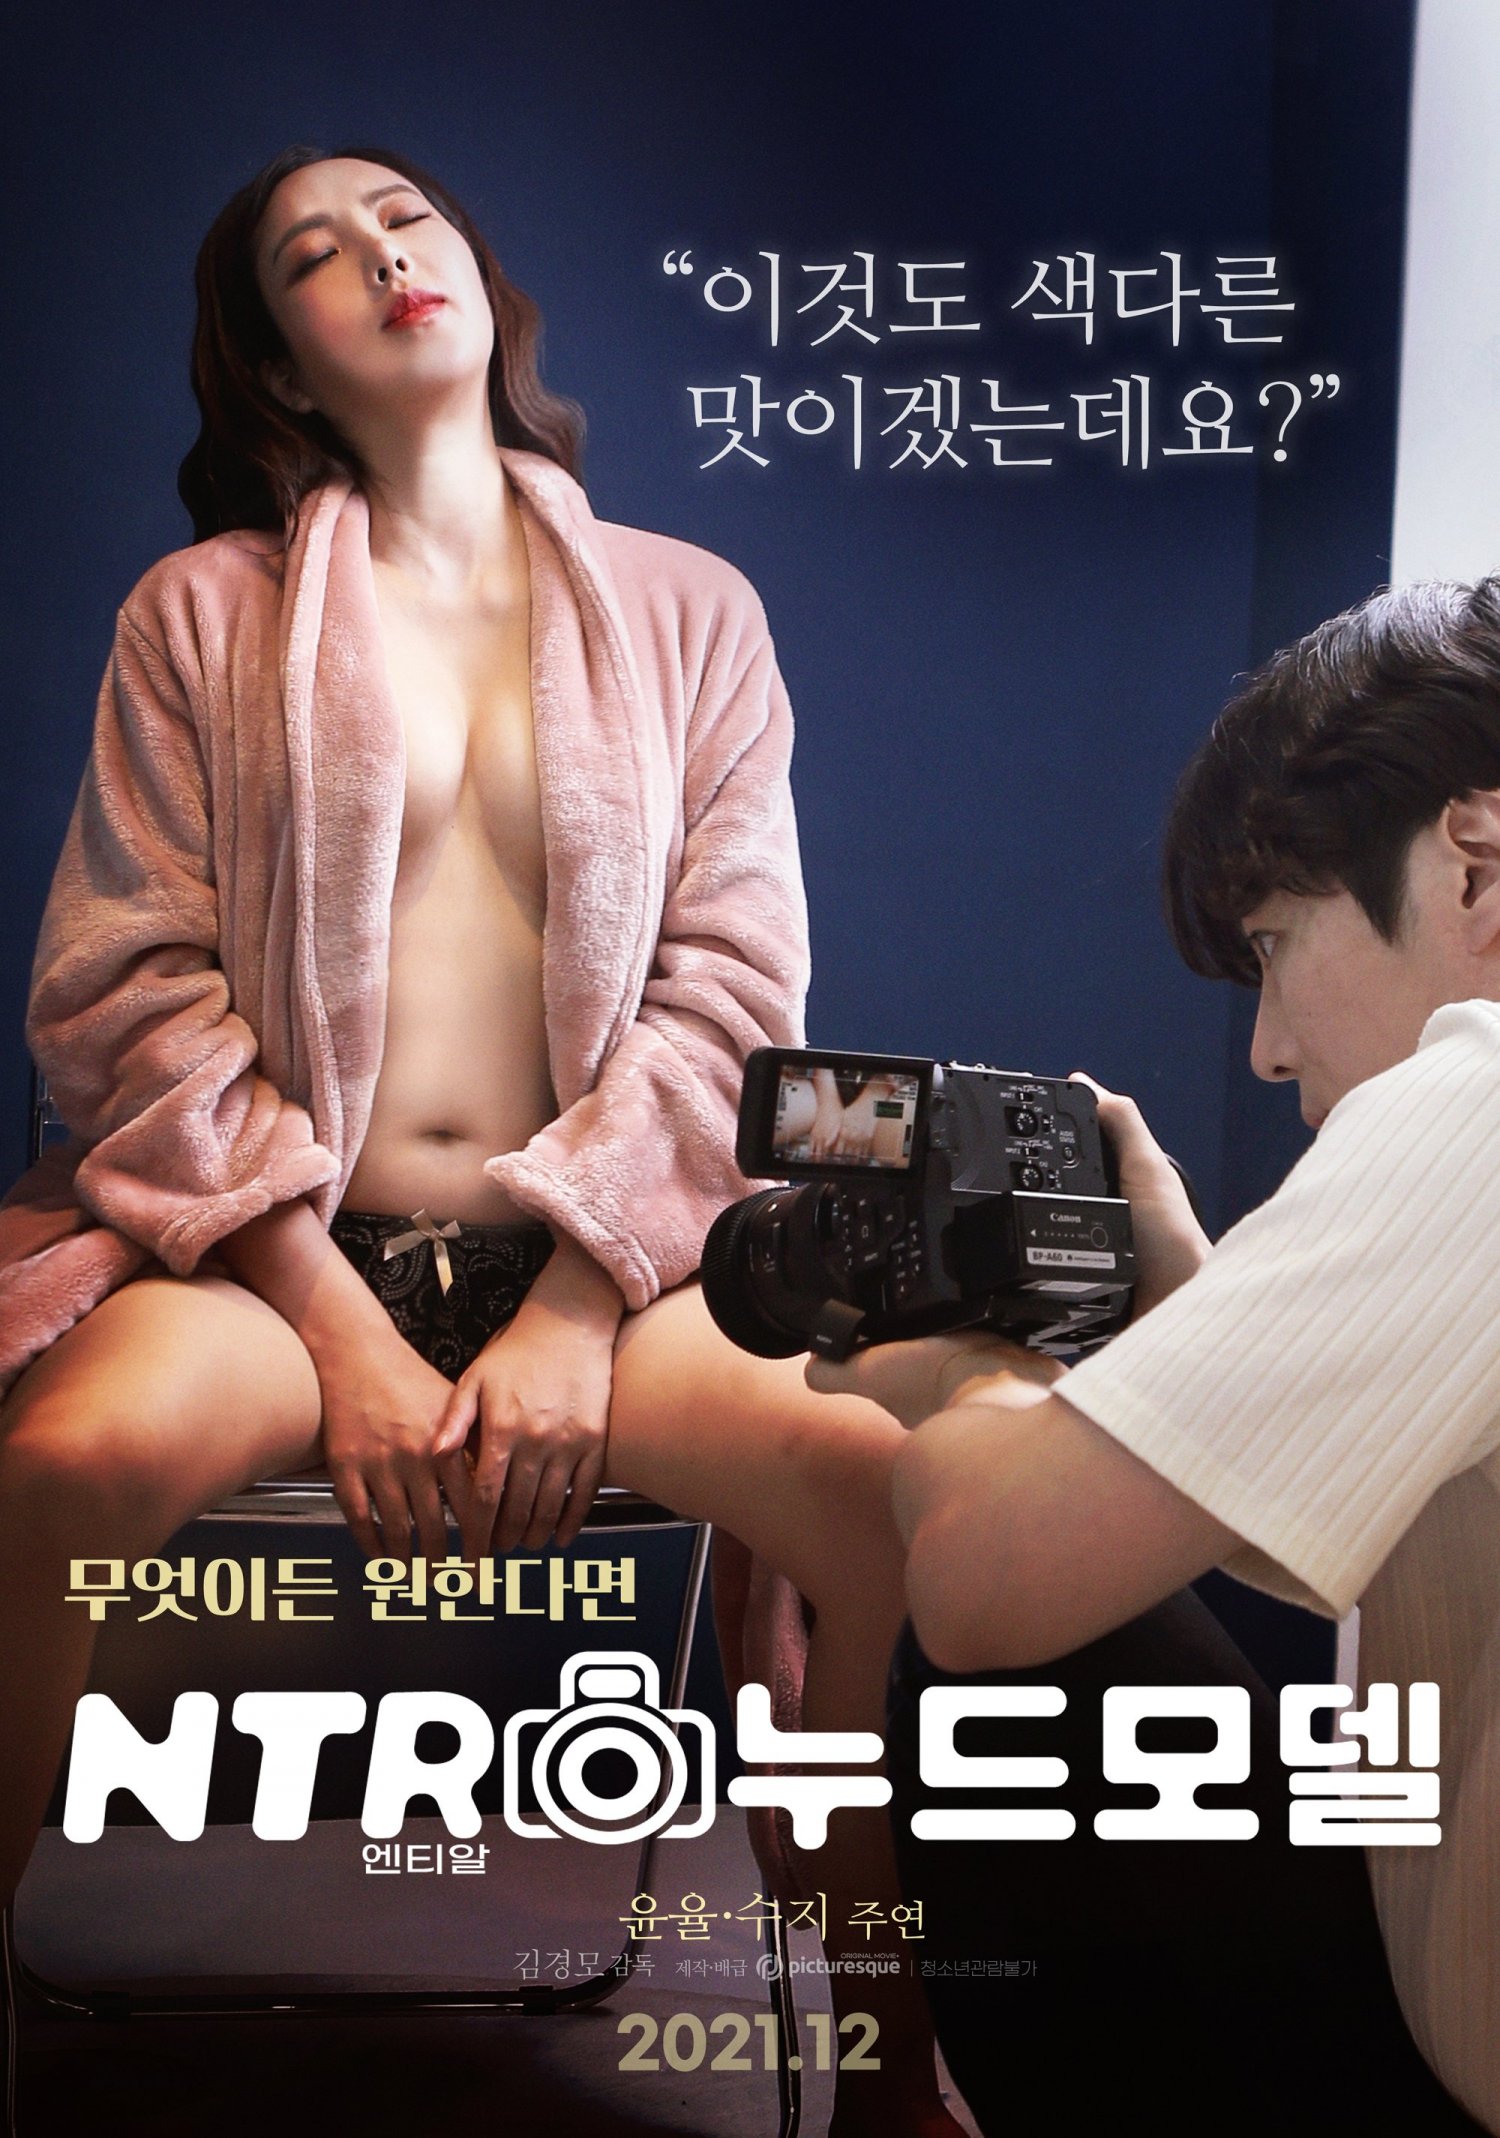 Nude movie korean